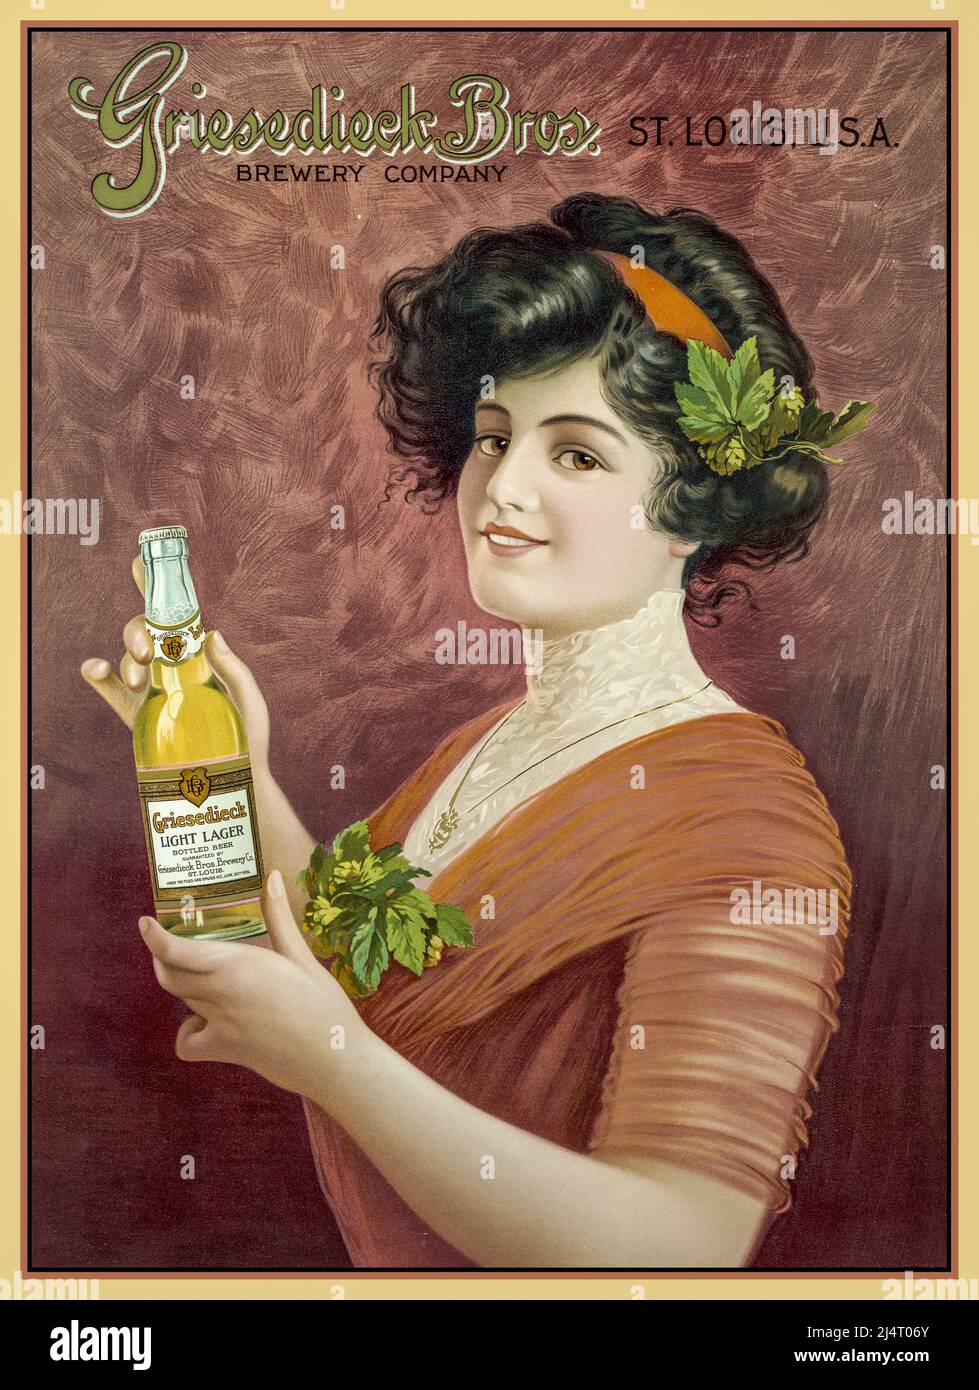 Vintage Beer Werbeplakat für Griesedieck Bros. Brewing Company, St. Louis, USA Ein Gibson Girl hält eine Flasche Griesedieck Light Lagerbier. Farblithographie, Flasche datiert auf 1909. Stockfoto